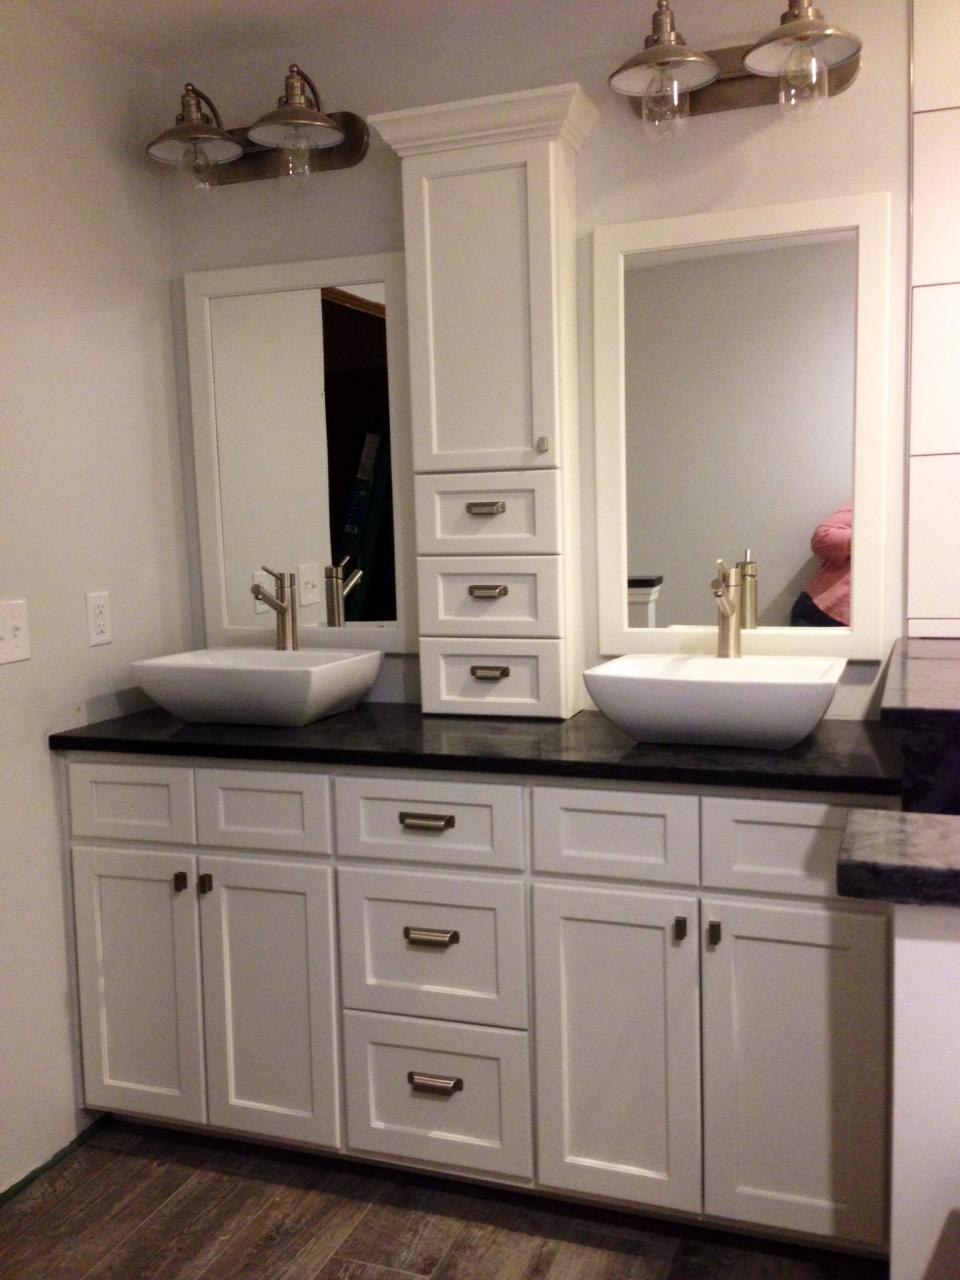 My master bathroom vanity. Bathroom vanity designs, Bathroom sink